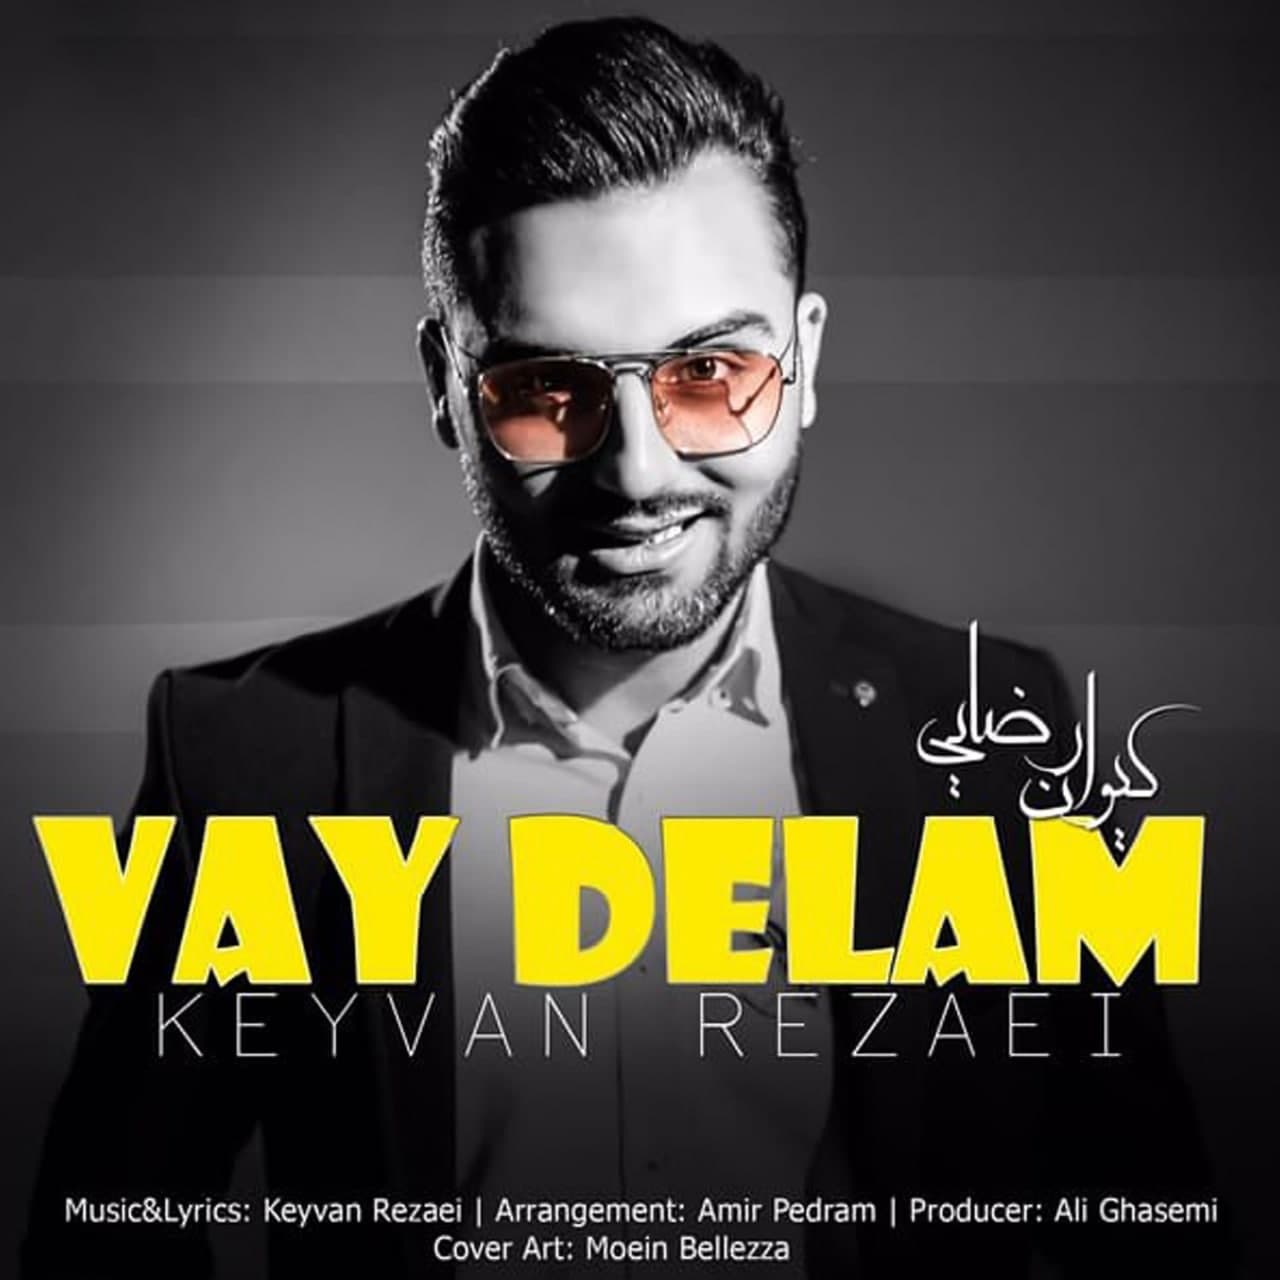  دانلود آهنگ جدید کیوان رضایی - وای دلم | Download New Music By Keyvan Rezaei - Vay Delam